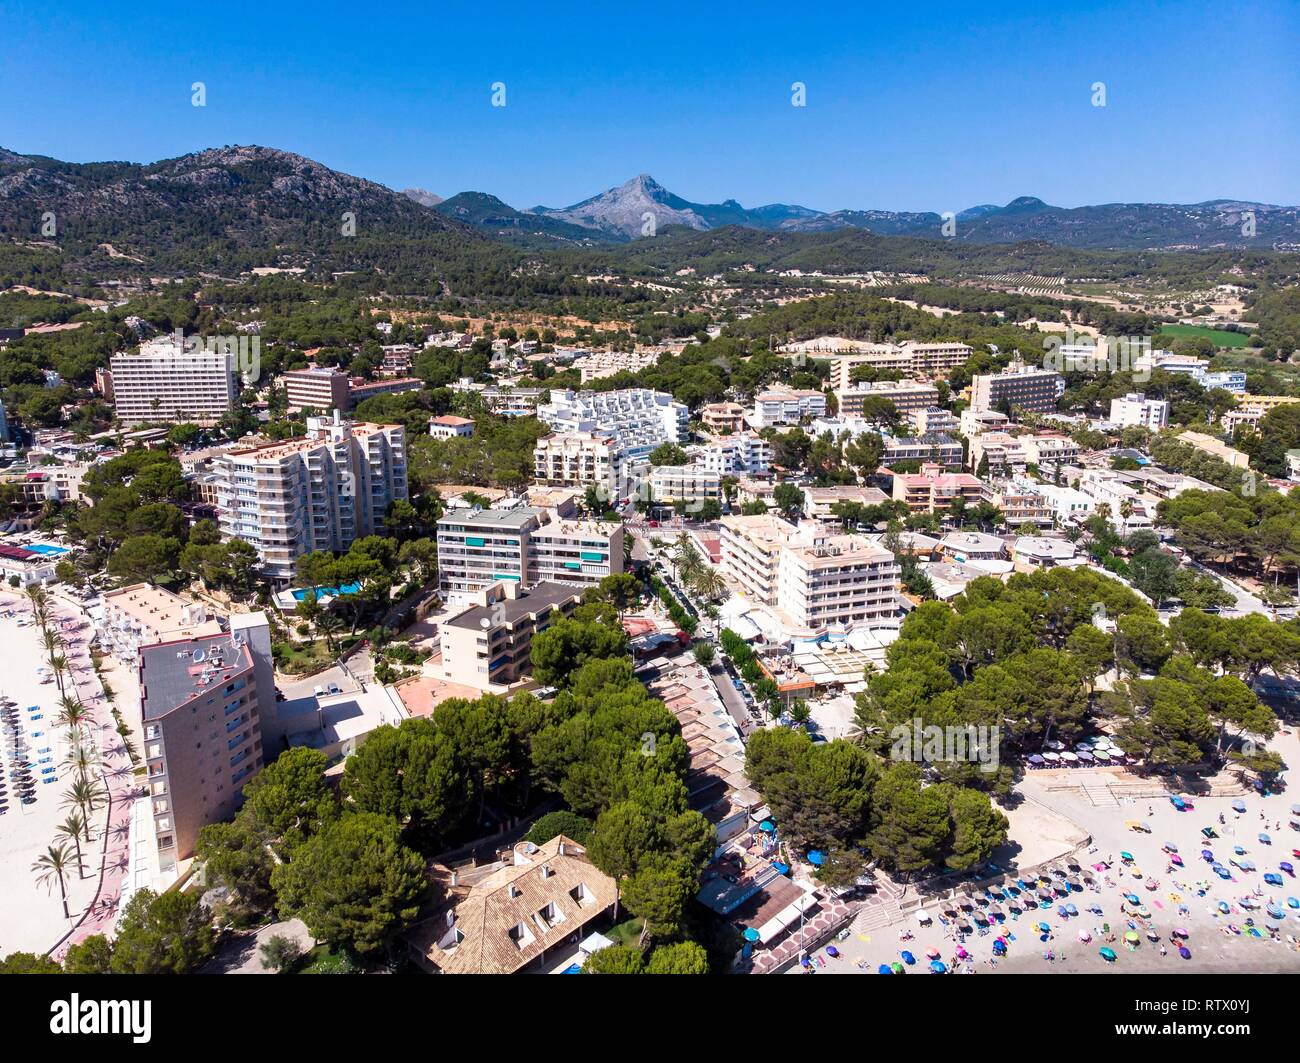 Vista aerea, vista di Peguera con alberghi e spiagge, Costa de la Calma, regione Caliva, Maiorca, isole Baleari, Spagna Foto Stock